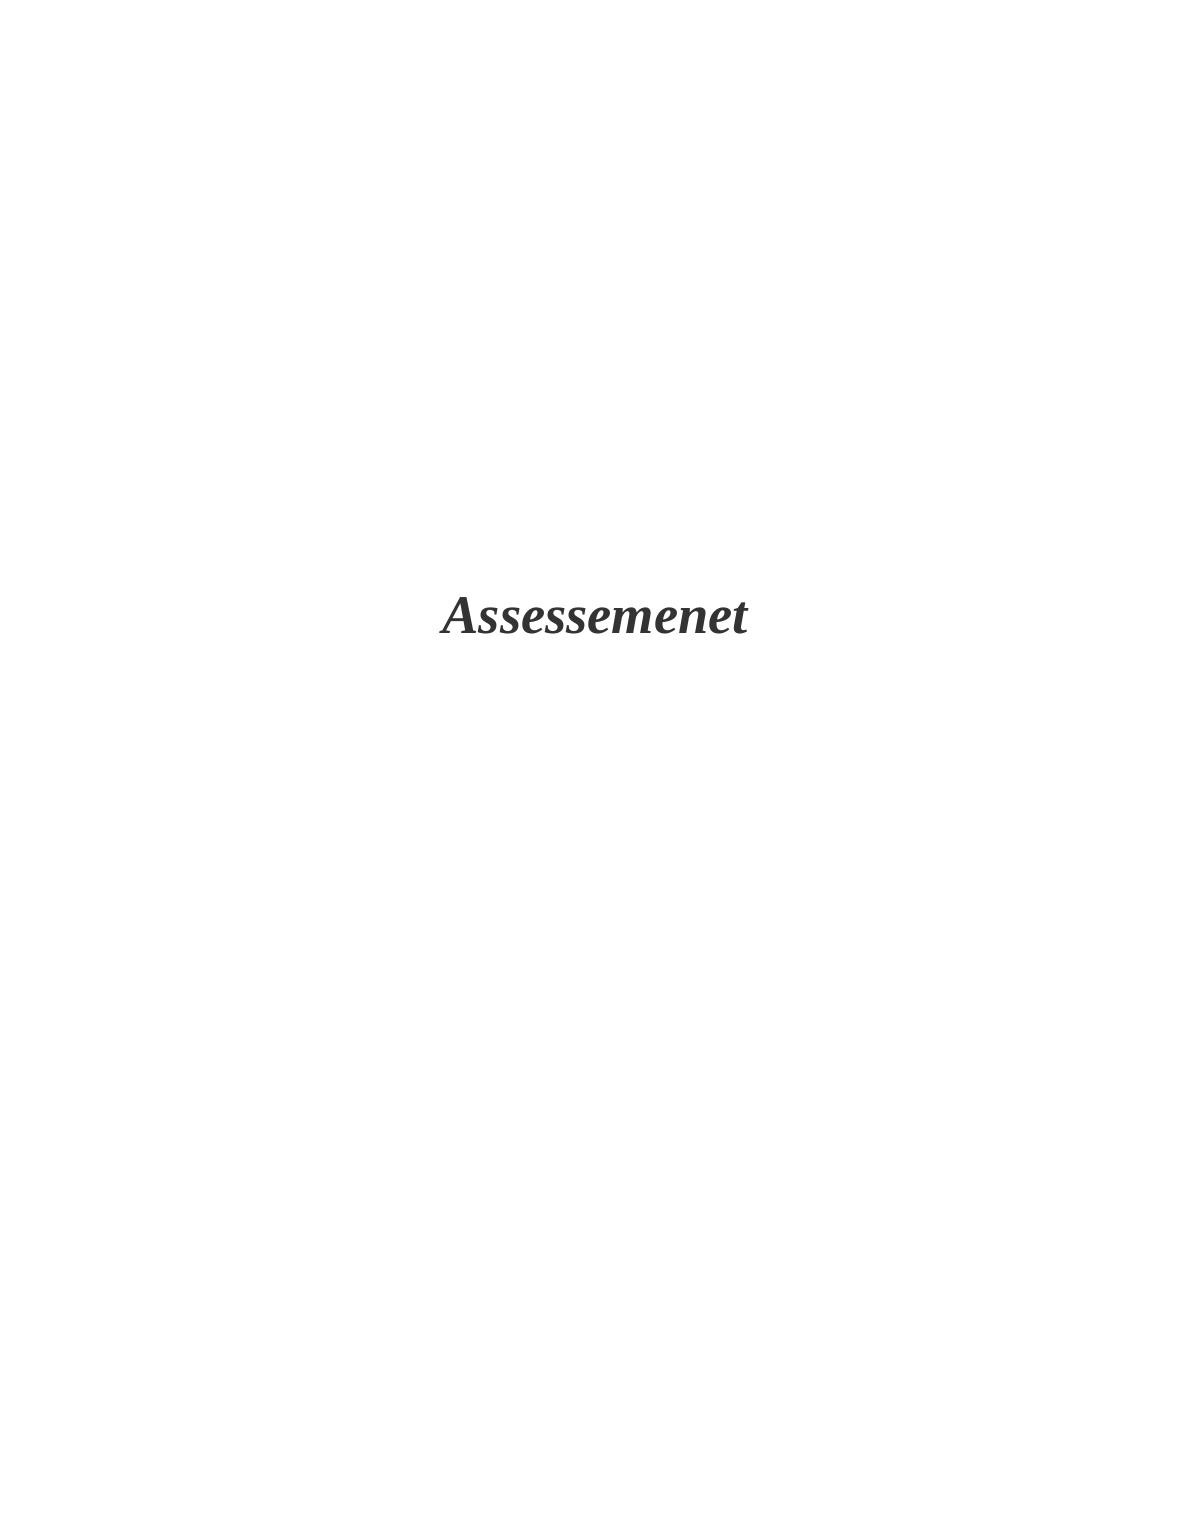 Business Plan Assessment_1